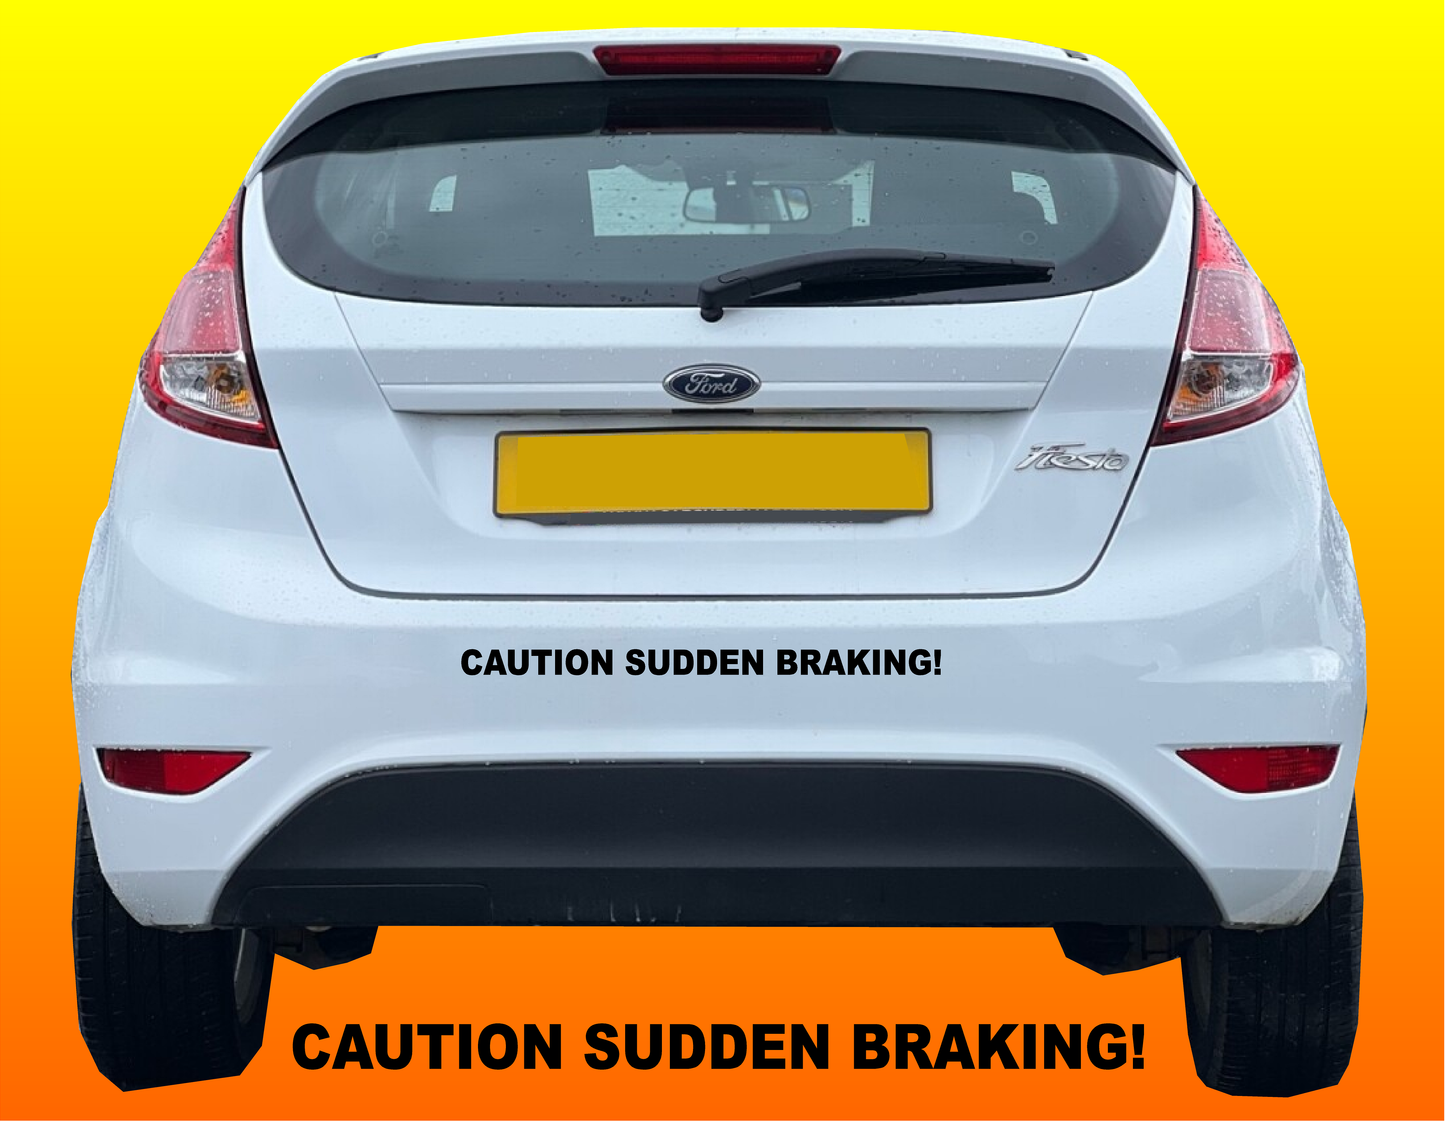 Caution sudden braking sticker